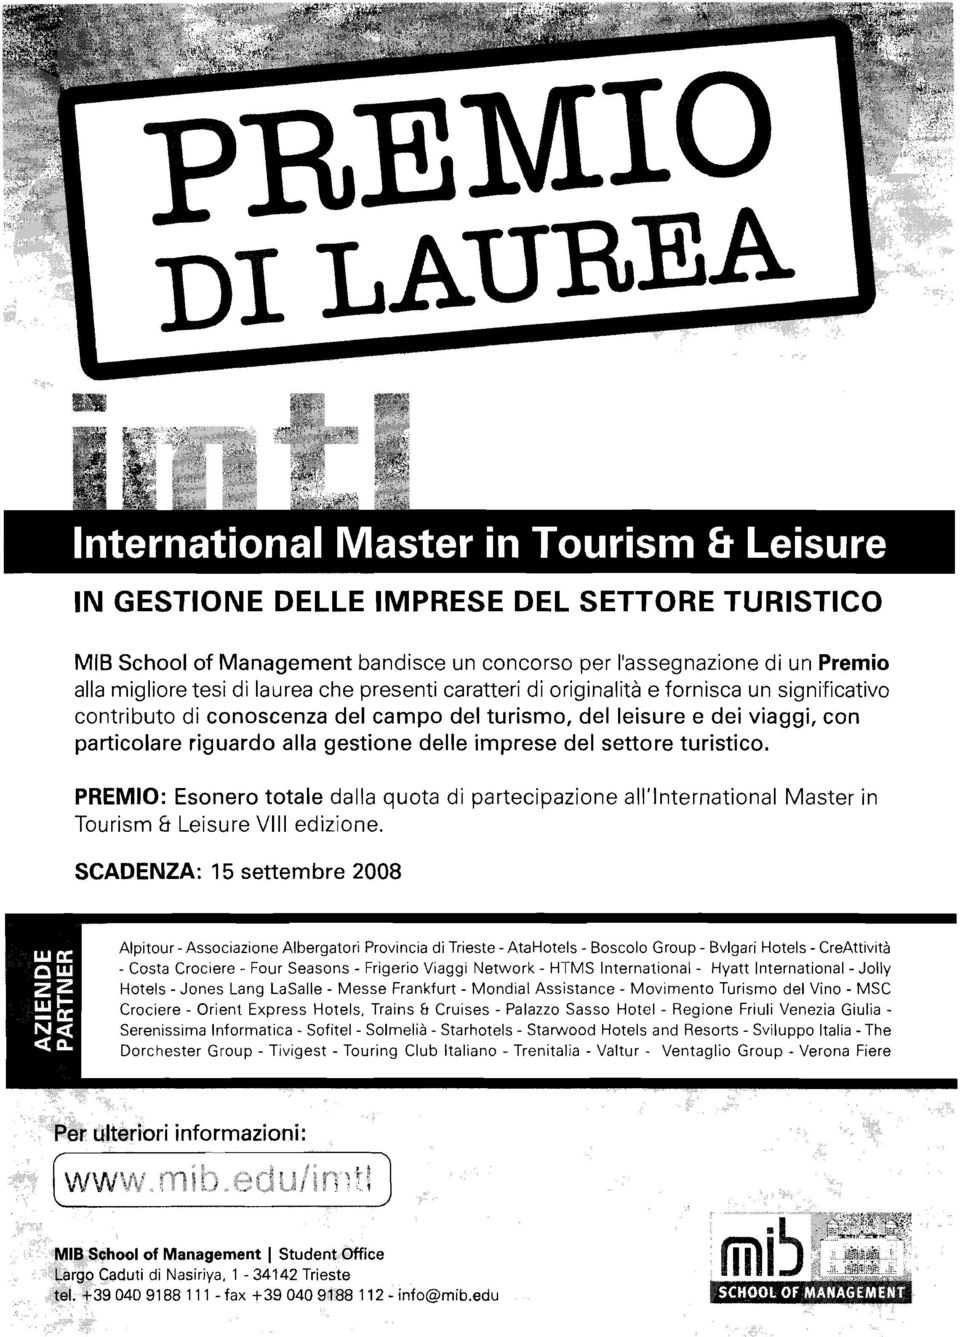 PREMIO: Esonero totale dalla quota di partecipazione all'lnternational Master in Tourism & Leisure VIII edizione.